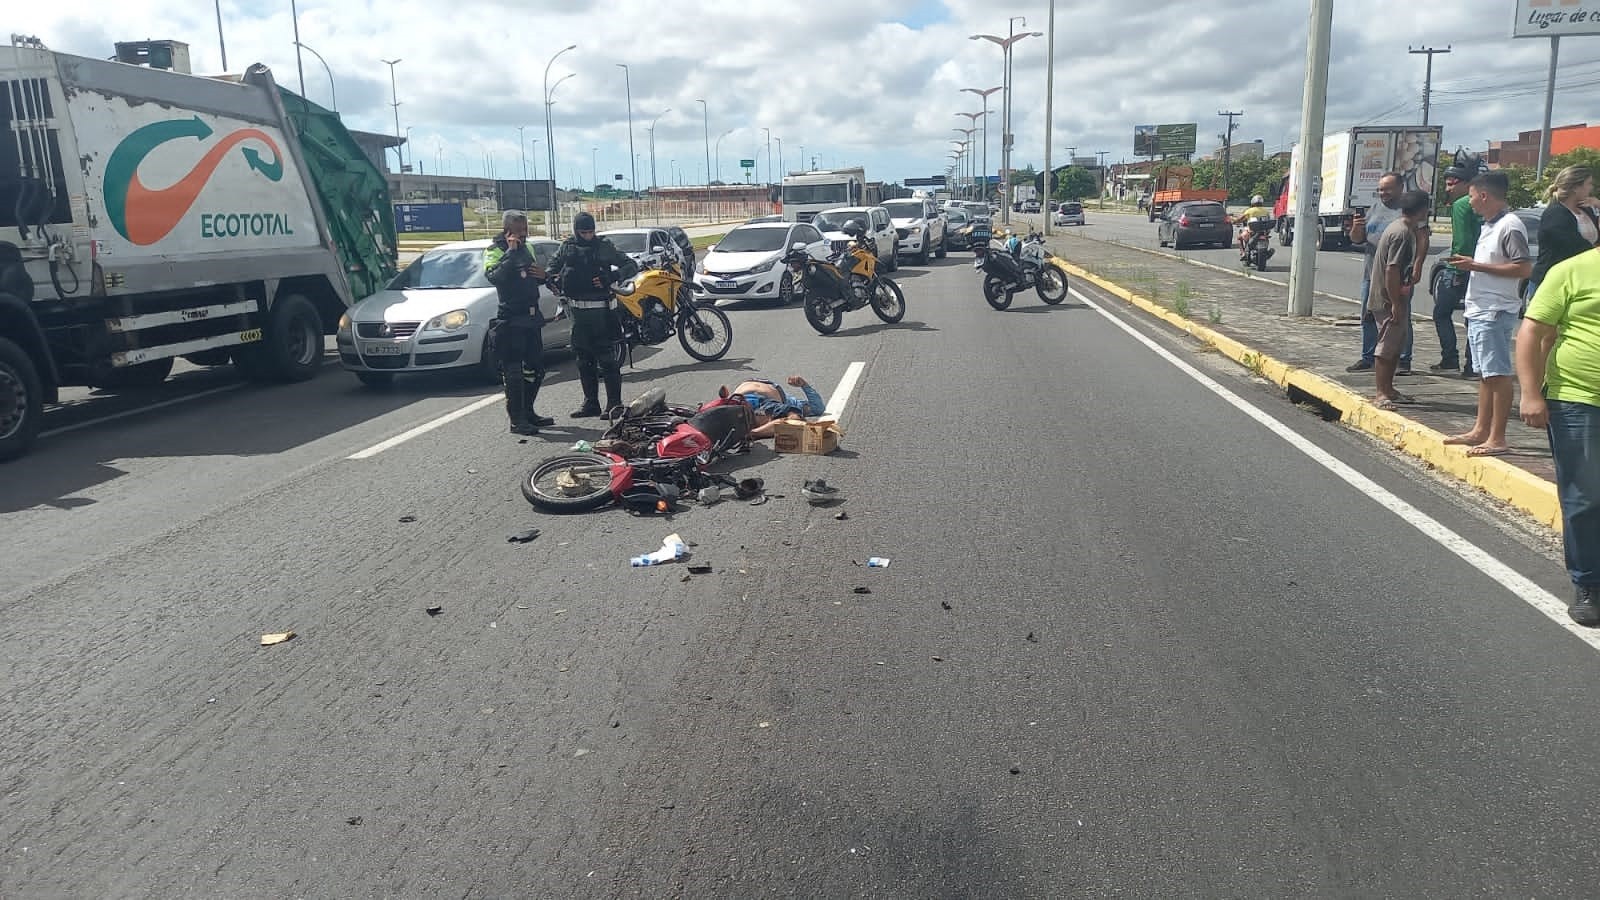 Motociclista foge de blitz, dirige na contramão e colide durante perseguição policial em Fortaleza